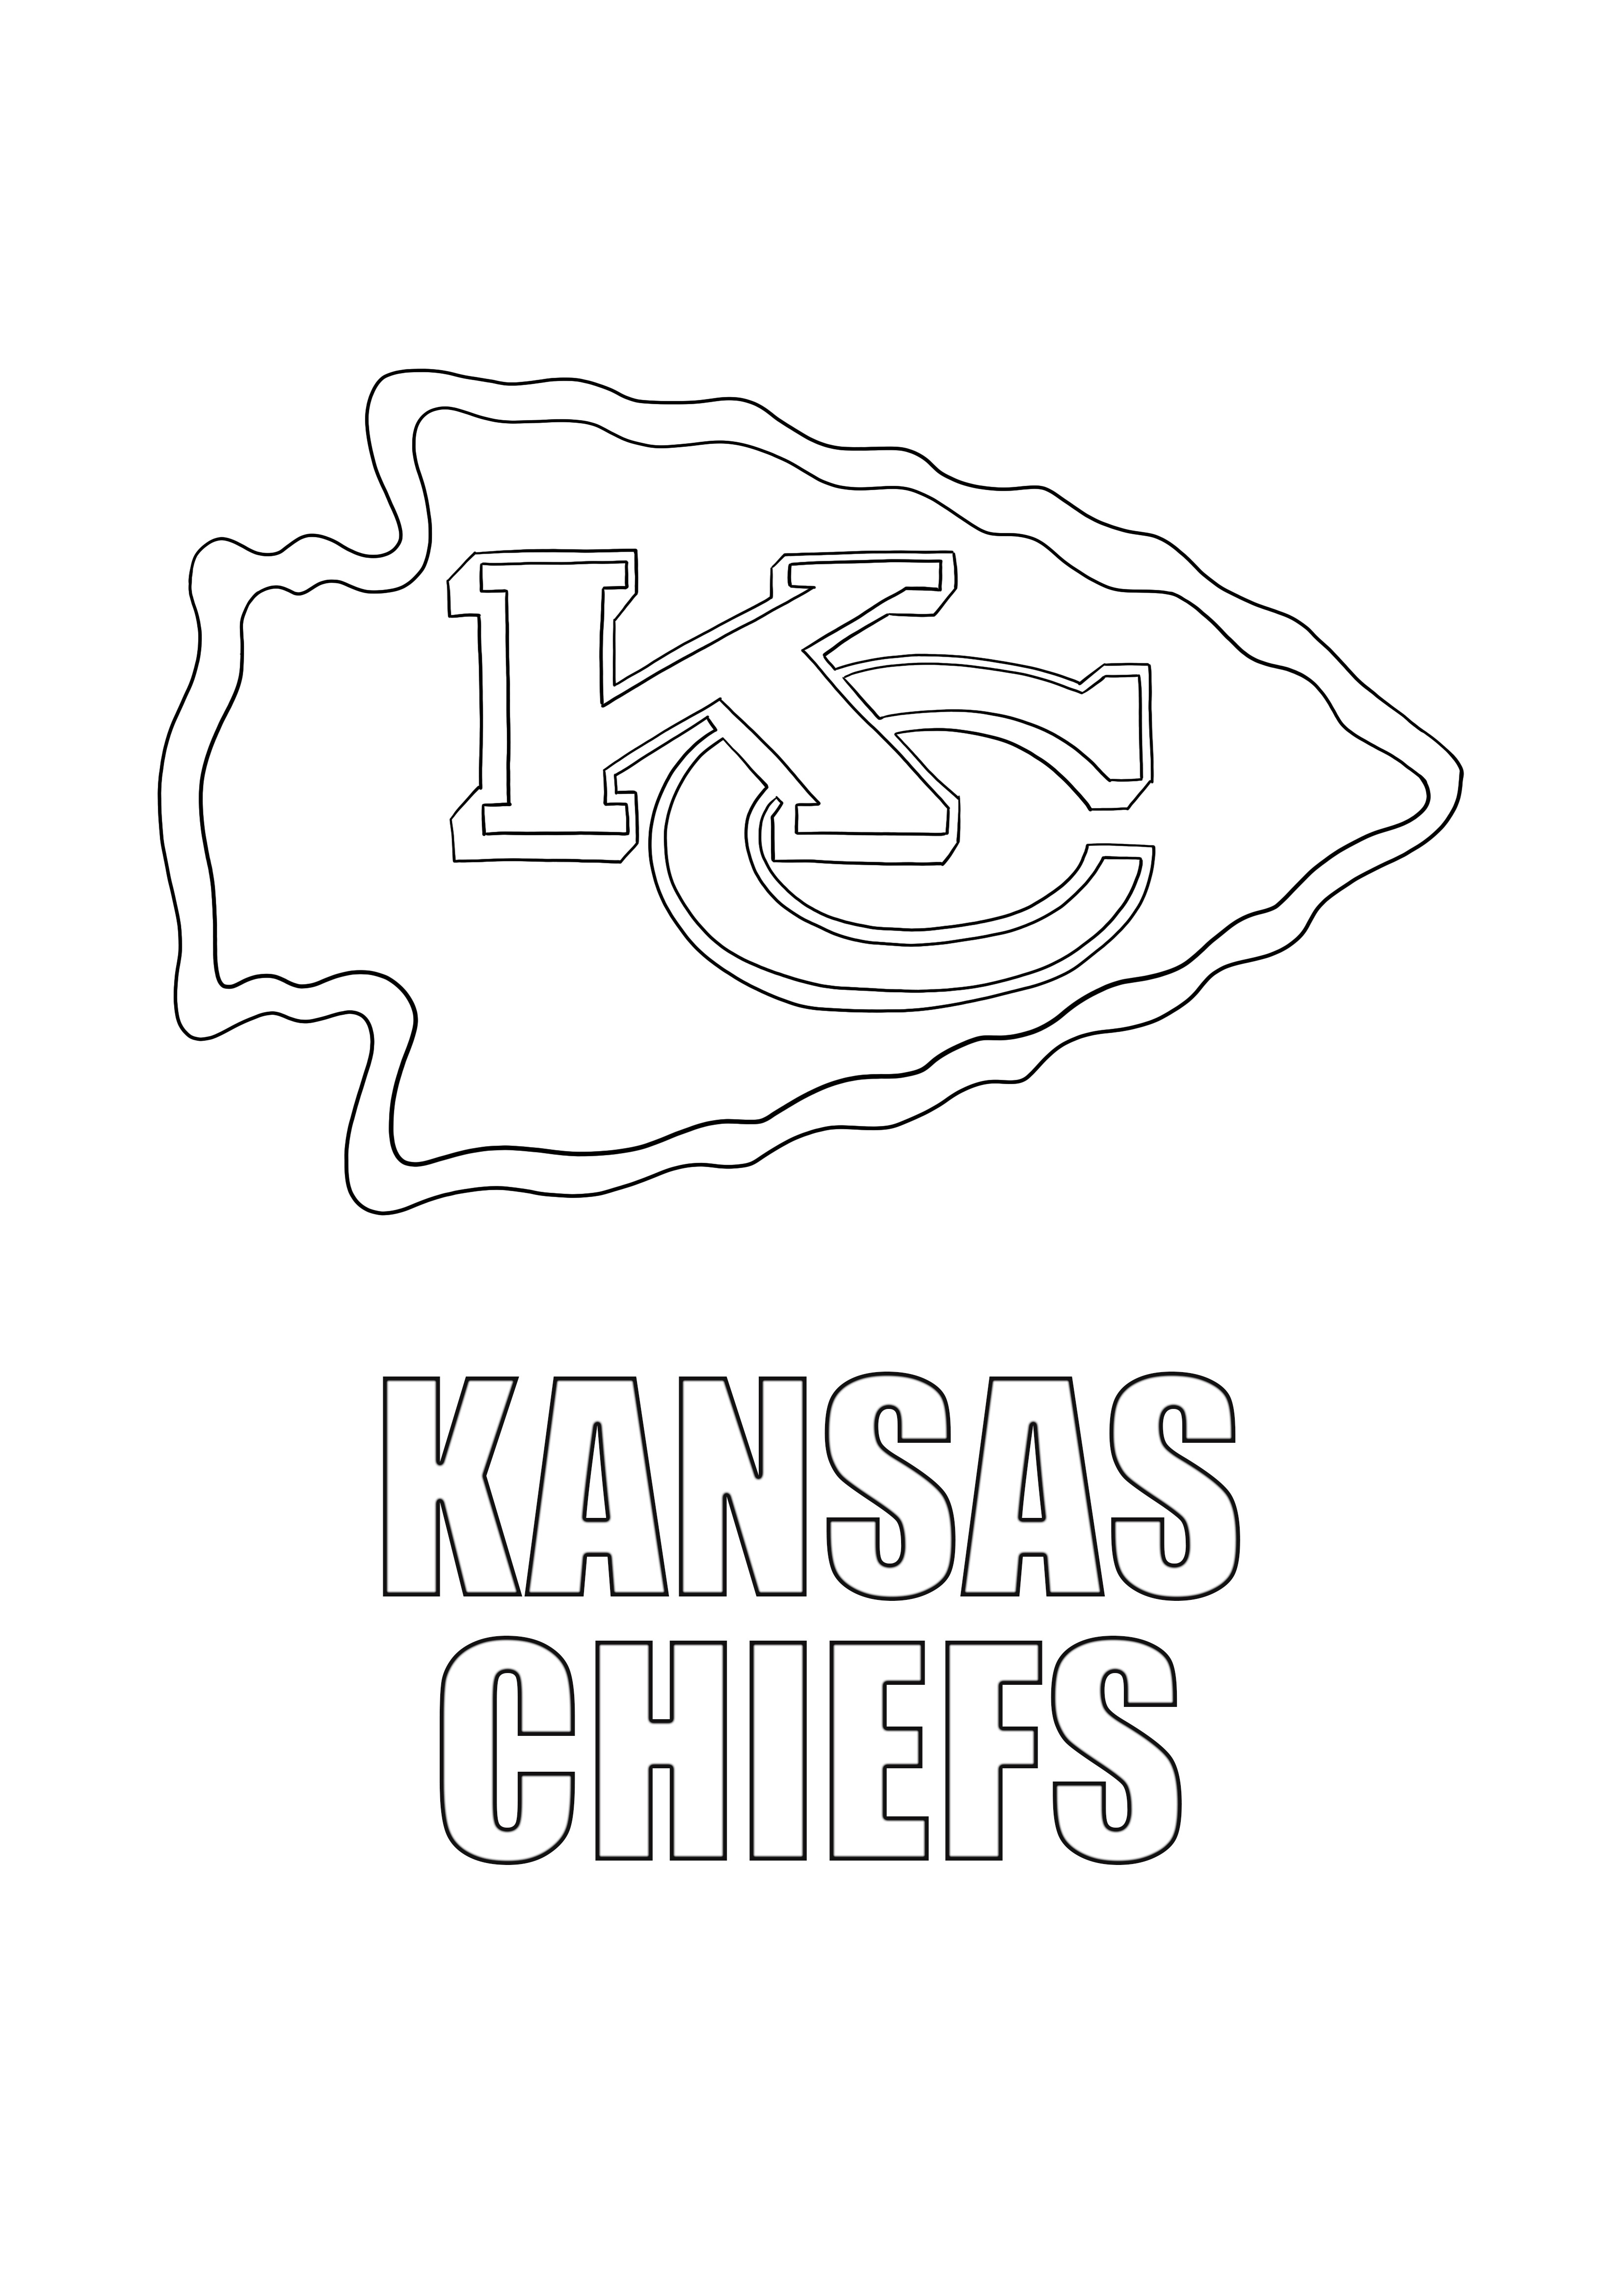 Kansas Chiefs kleur- en gratis downloadblad kleurplaat